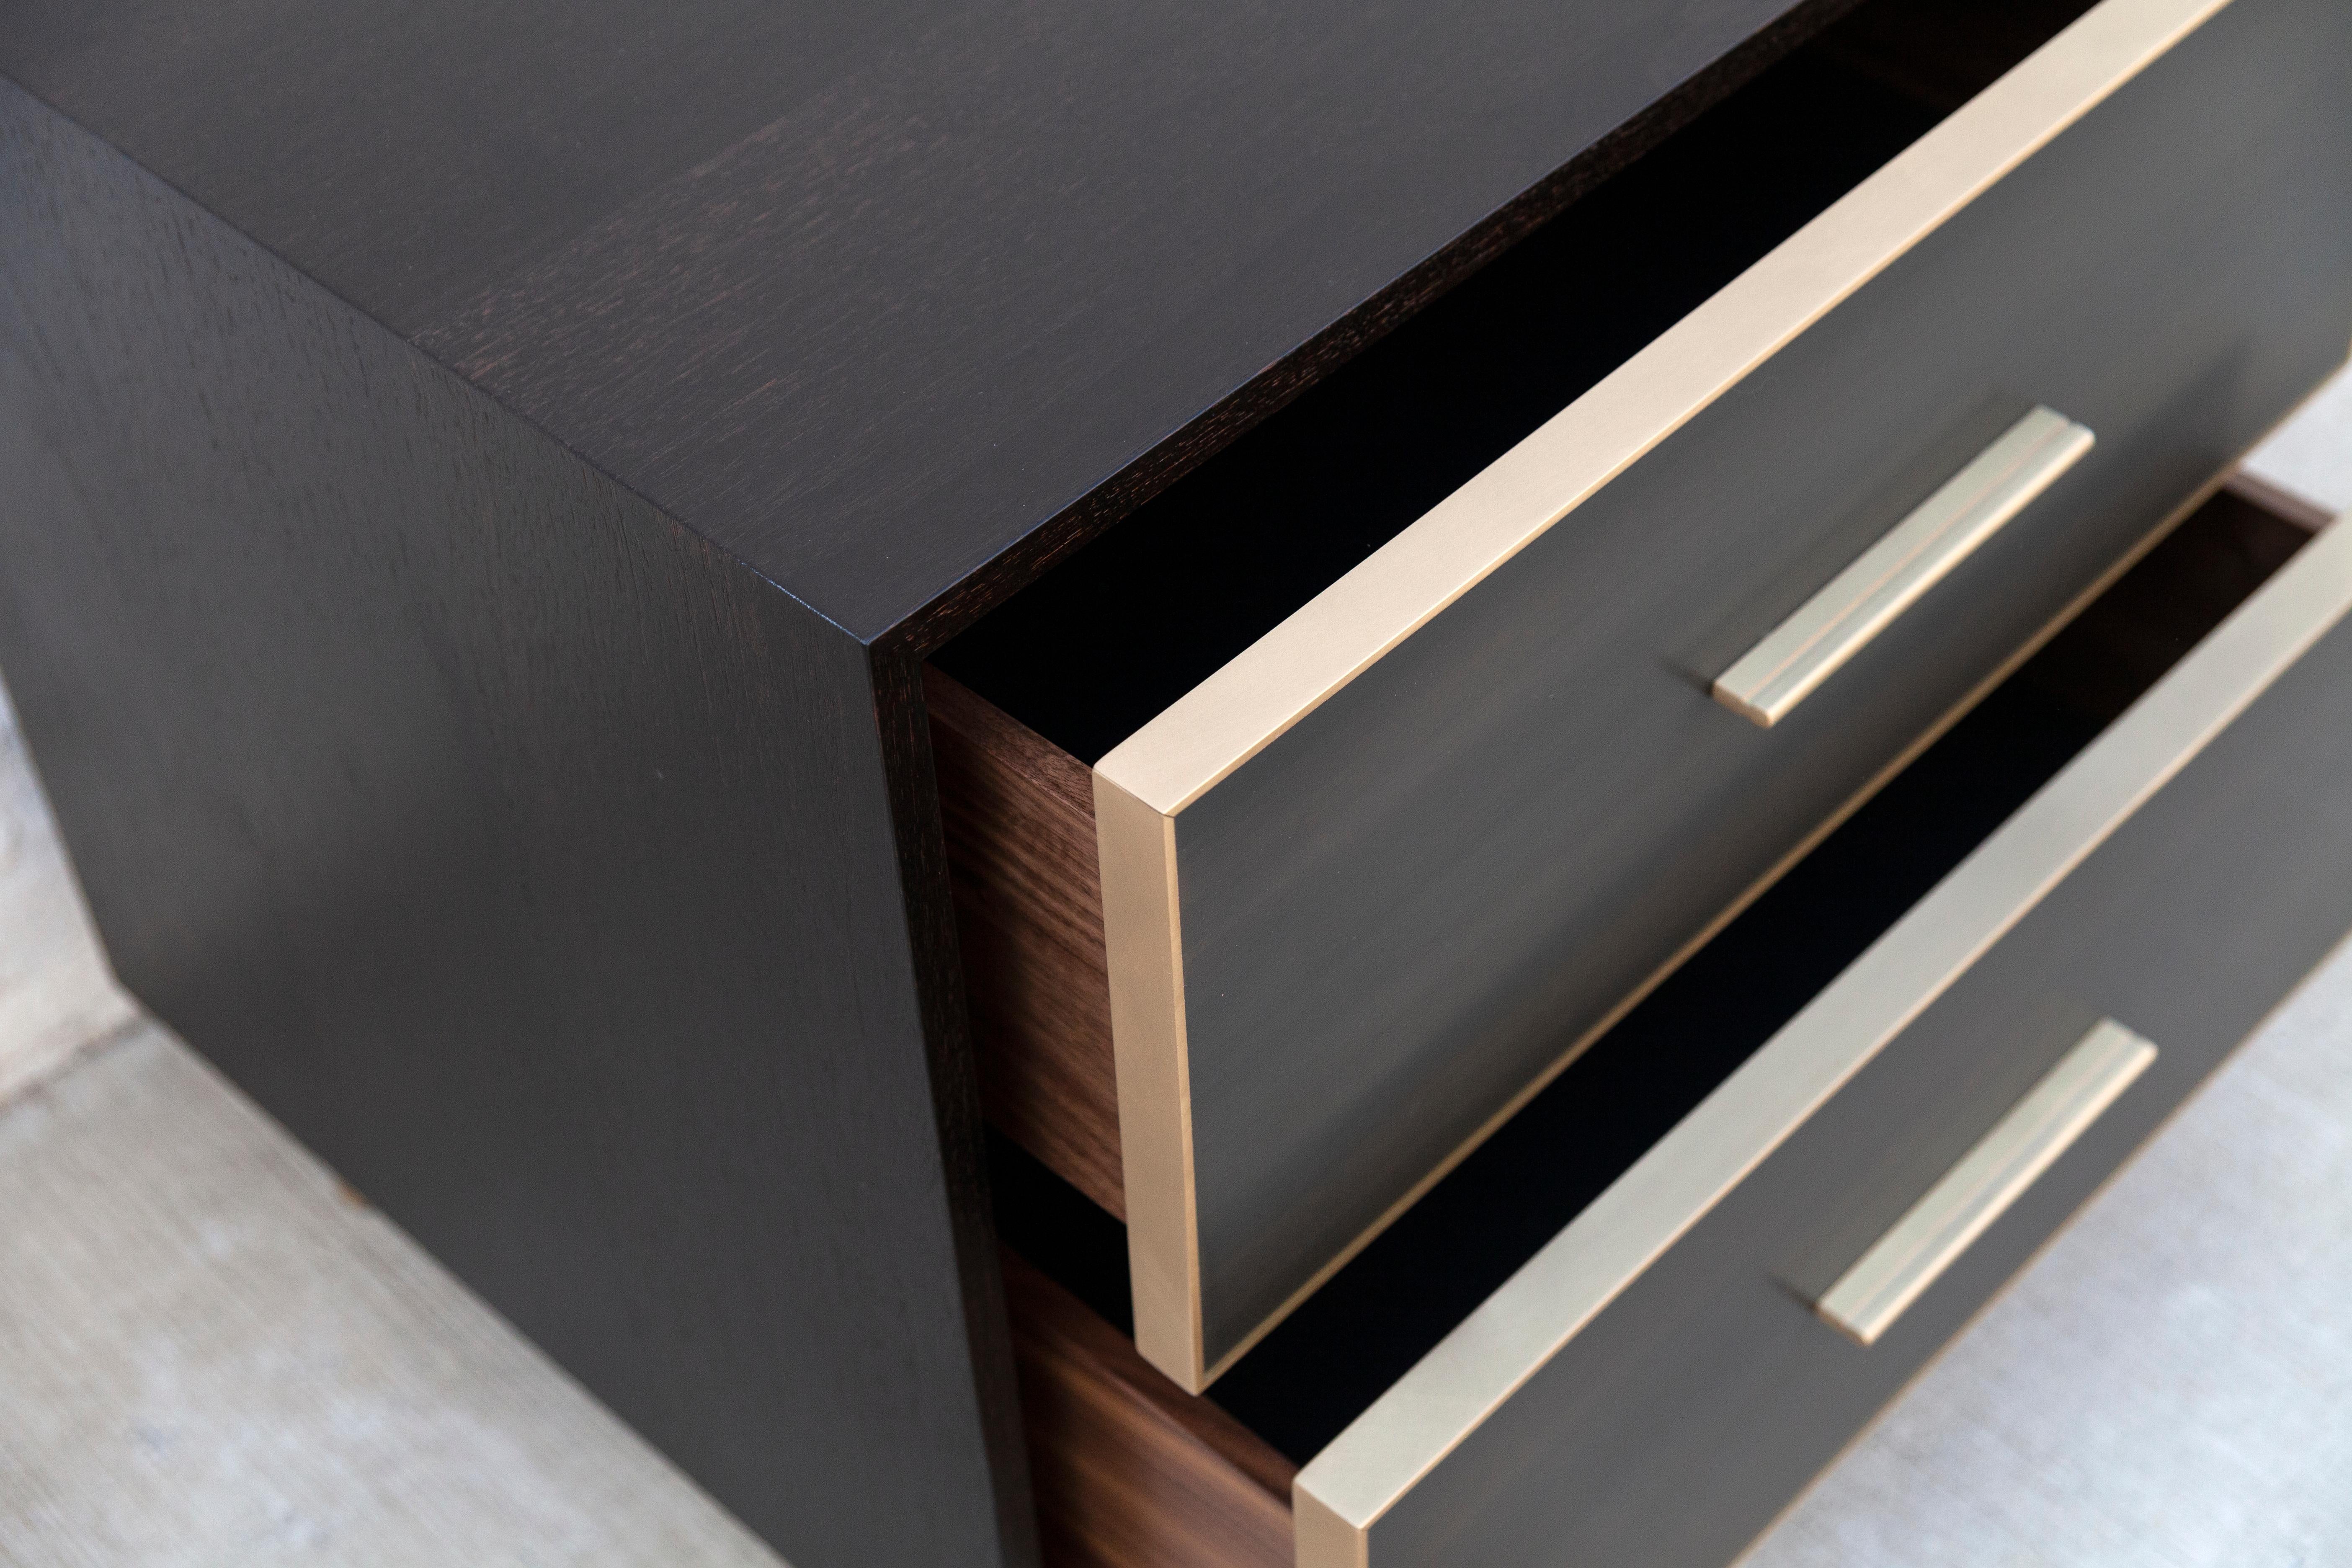 Compacte mais convaincante, la table d'appoint Jasper oppose des surfaces lisses et texturées, avec des tiroirs en résine de bronze coulés dans un extérieur en bois oxydé. La simplicité et la sobriété du design dissimulent un merveilleux mélange de